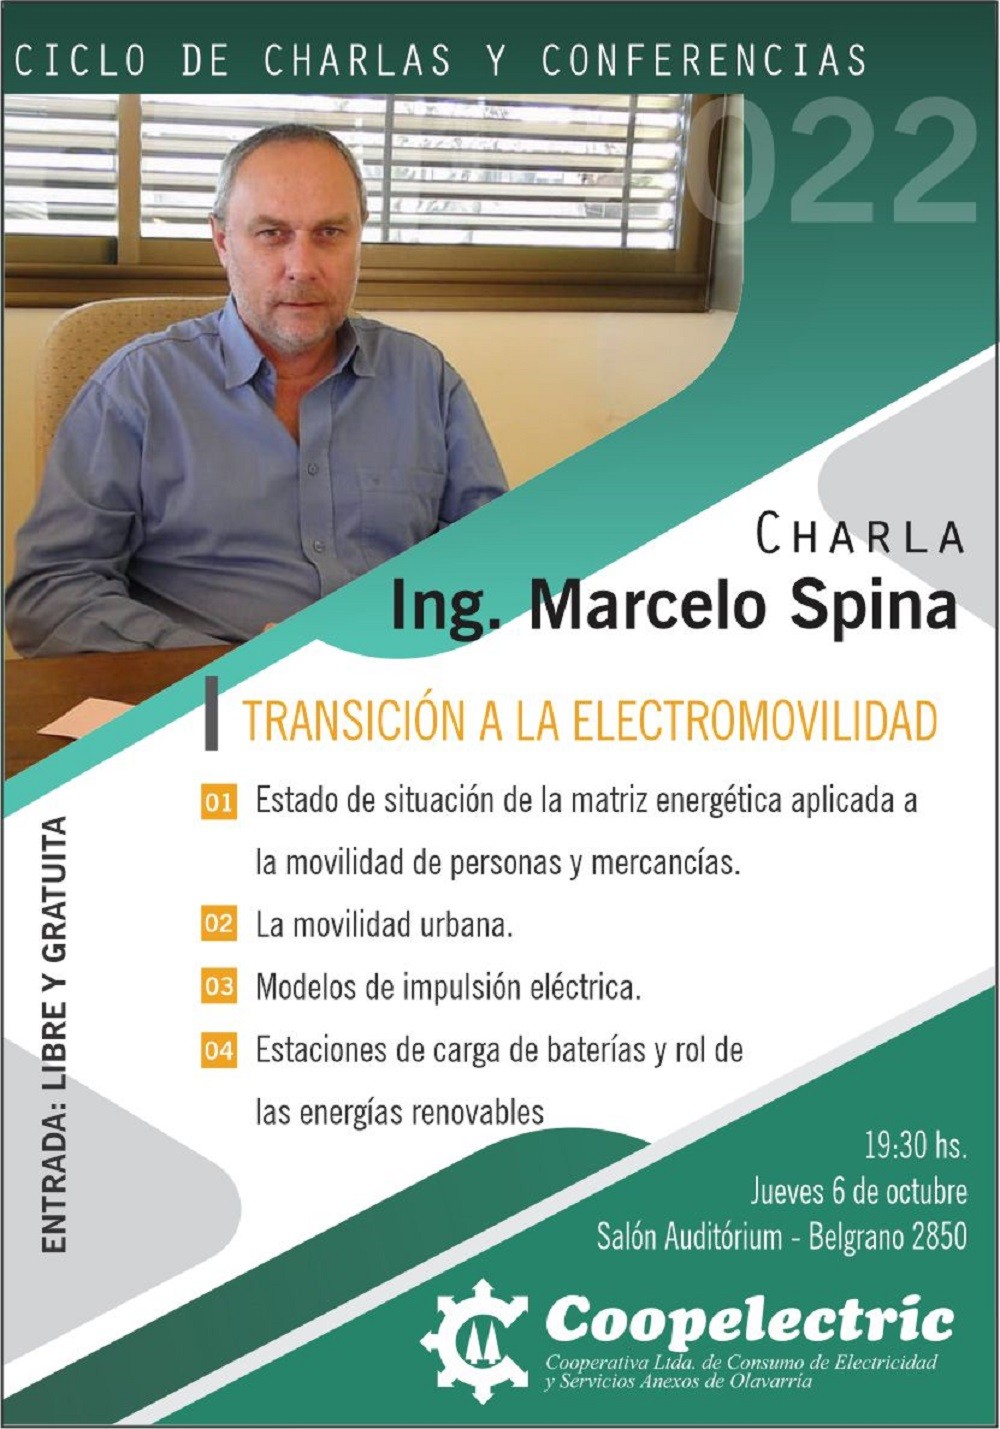 El Ingeniero Spina participará en el ciclo de charlas de Coopelectric